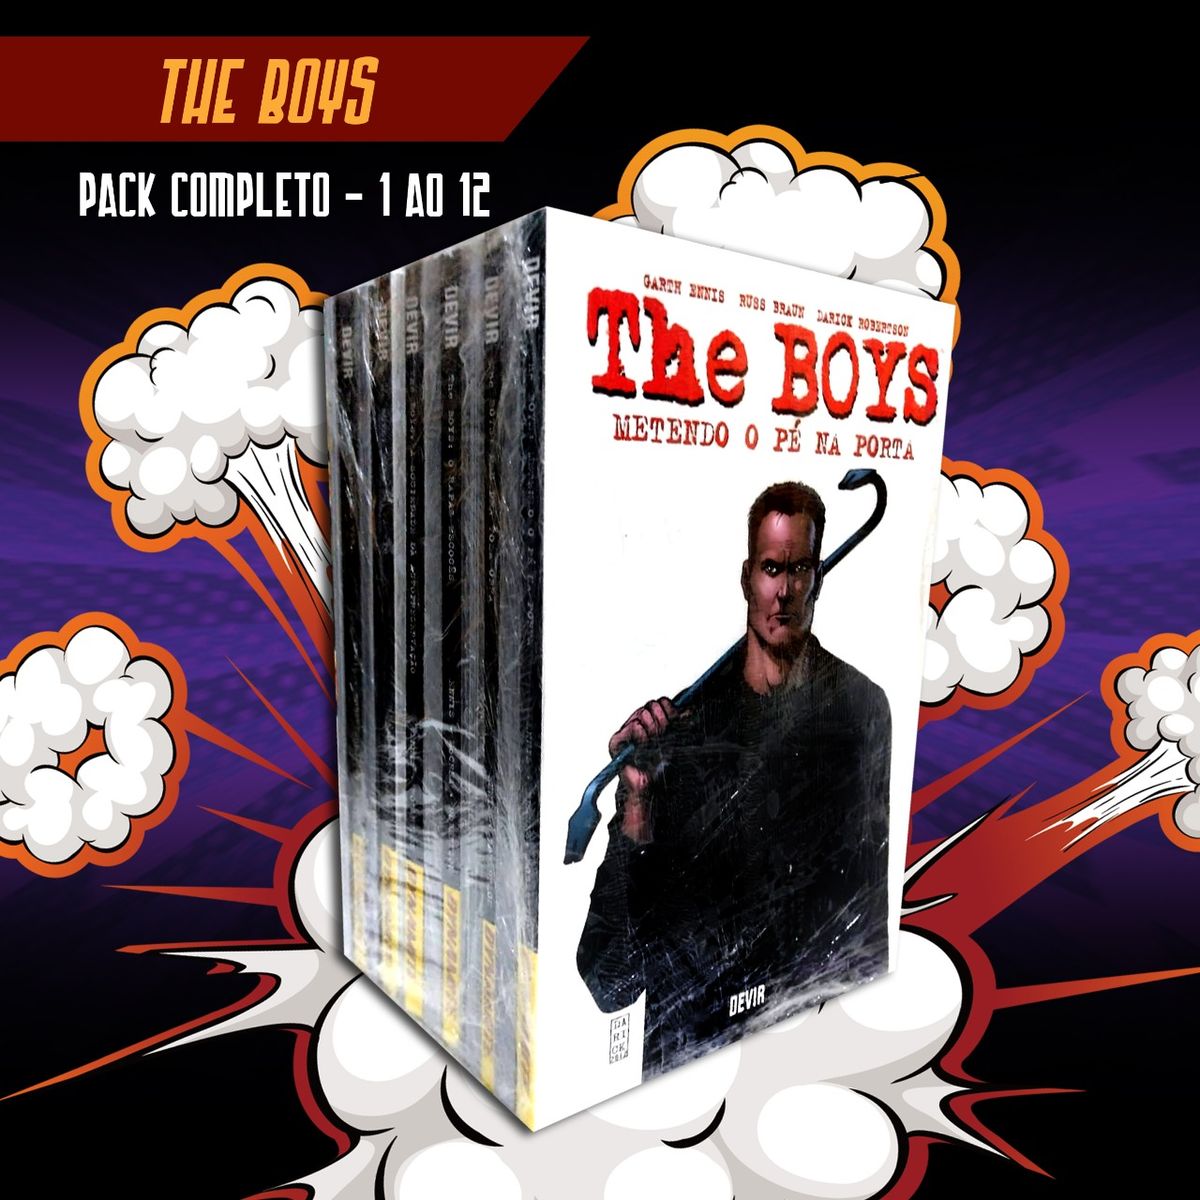 The Boys - Vol. 12 - Metendo o pé na porta - Devir Devir